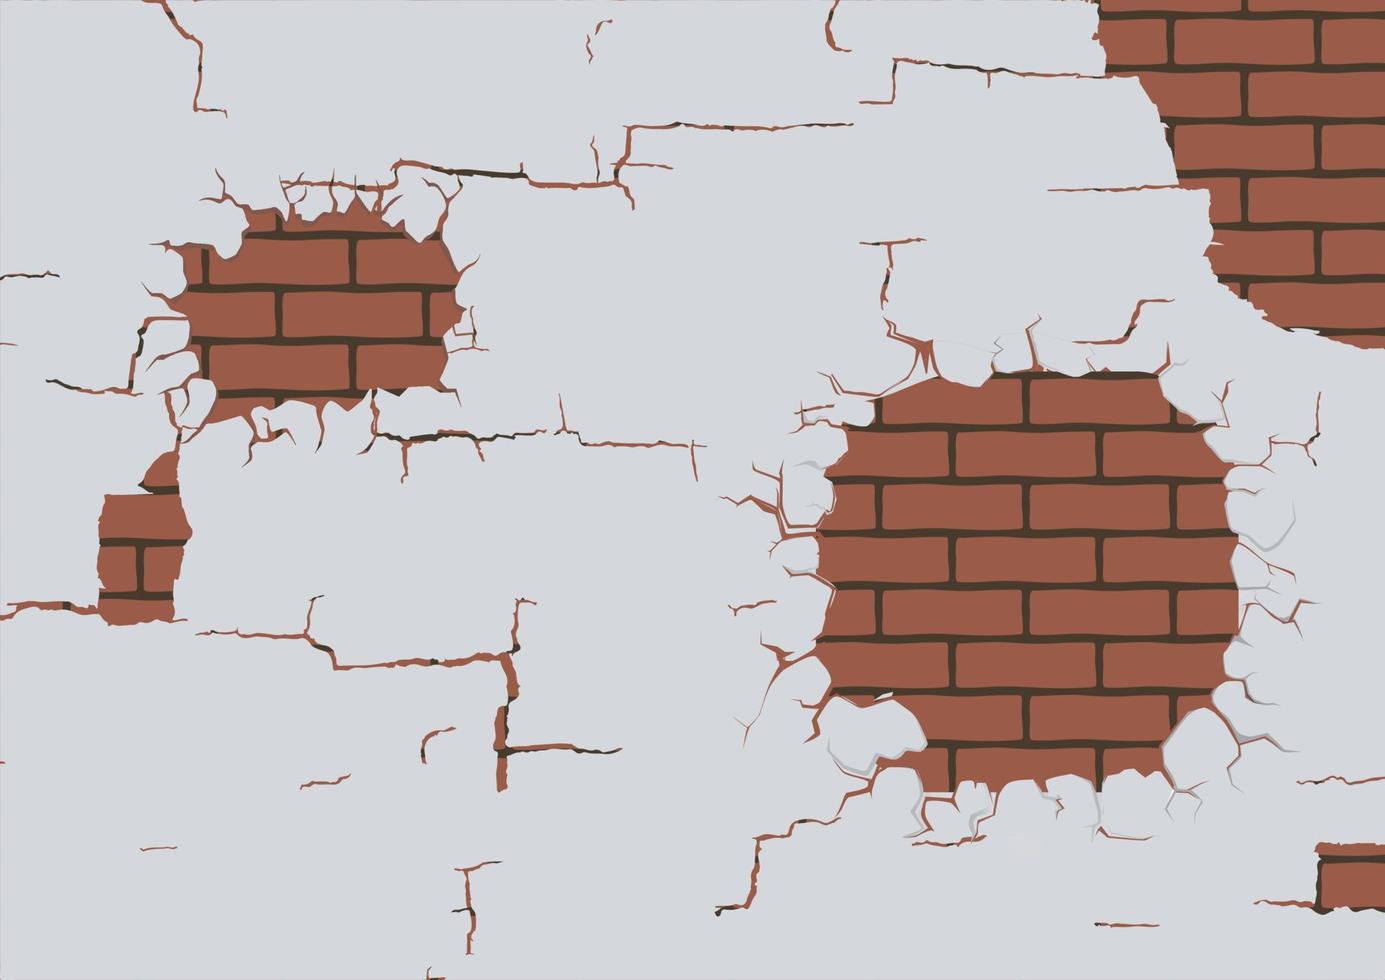 muro di mattoni rotto con foro. illustrazione vettoriale di muro di mattoni marrone